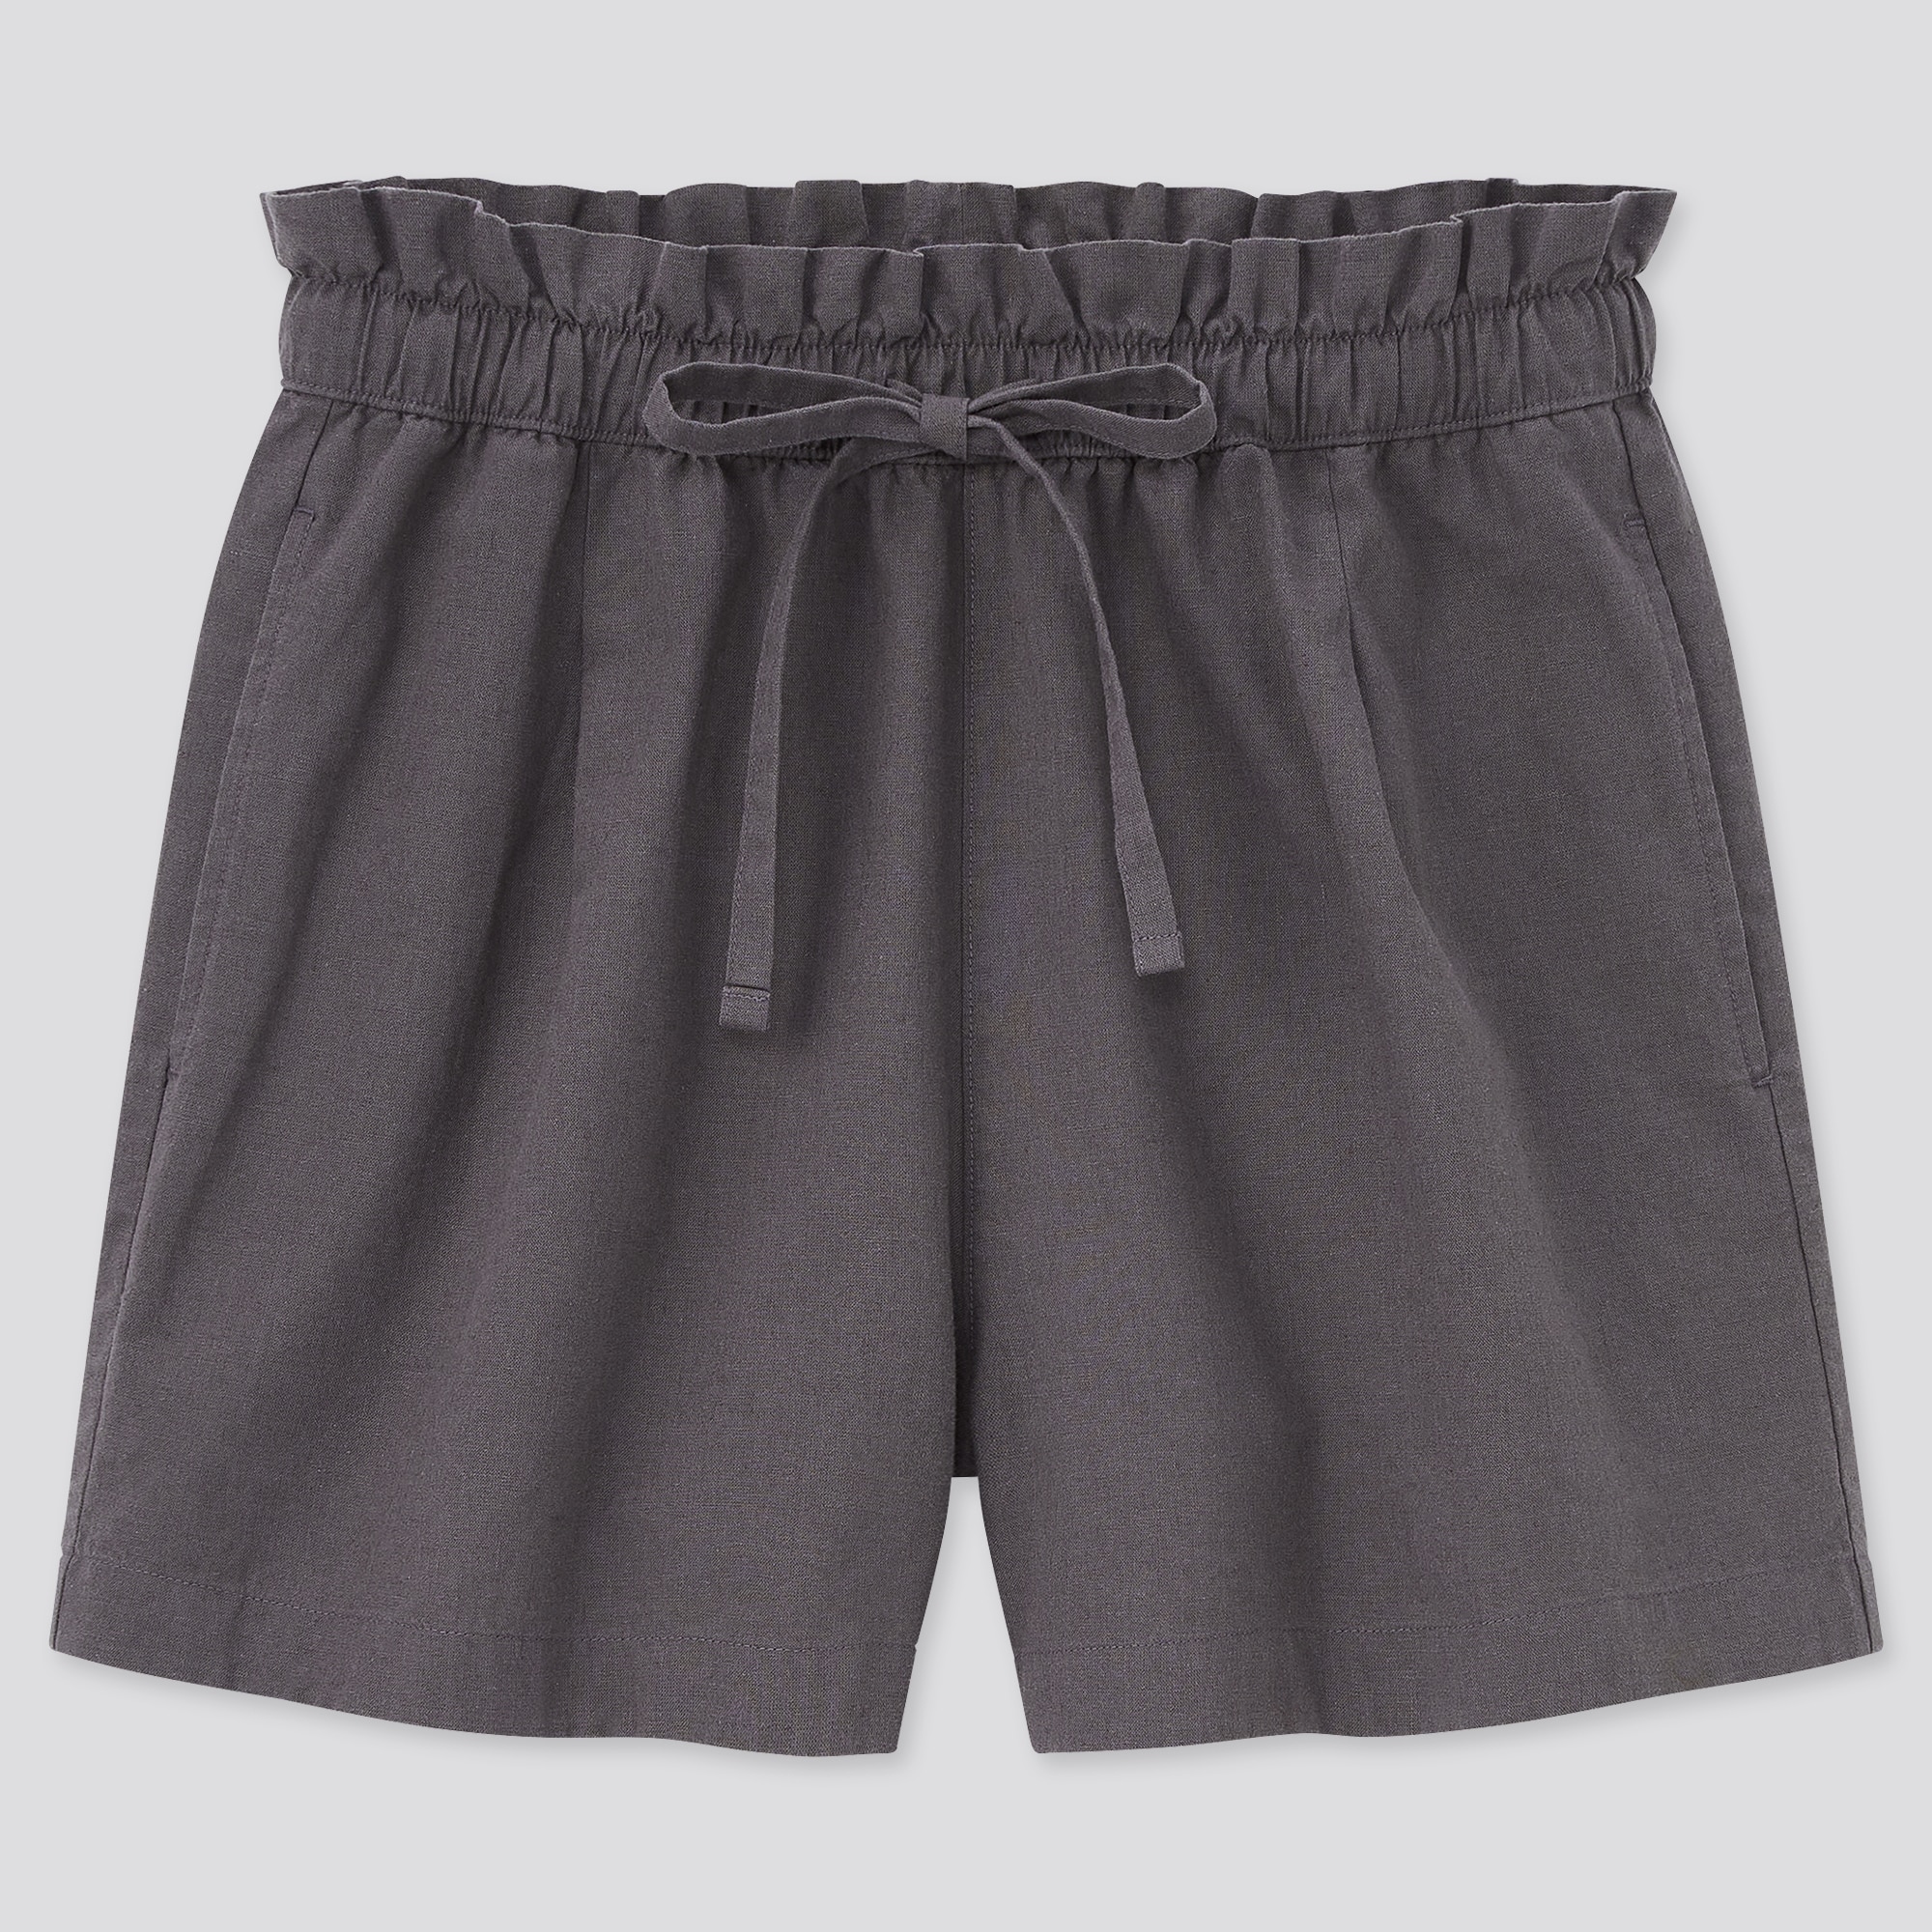 Women's Linen Shorts find